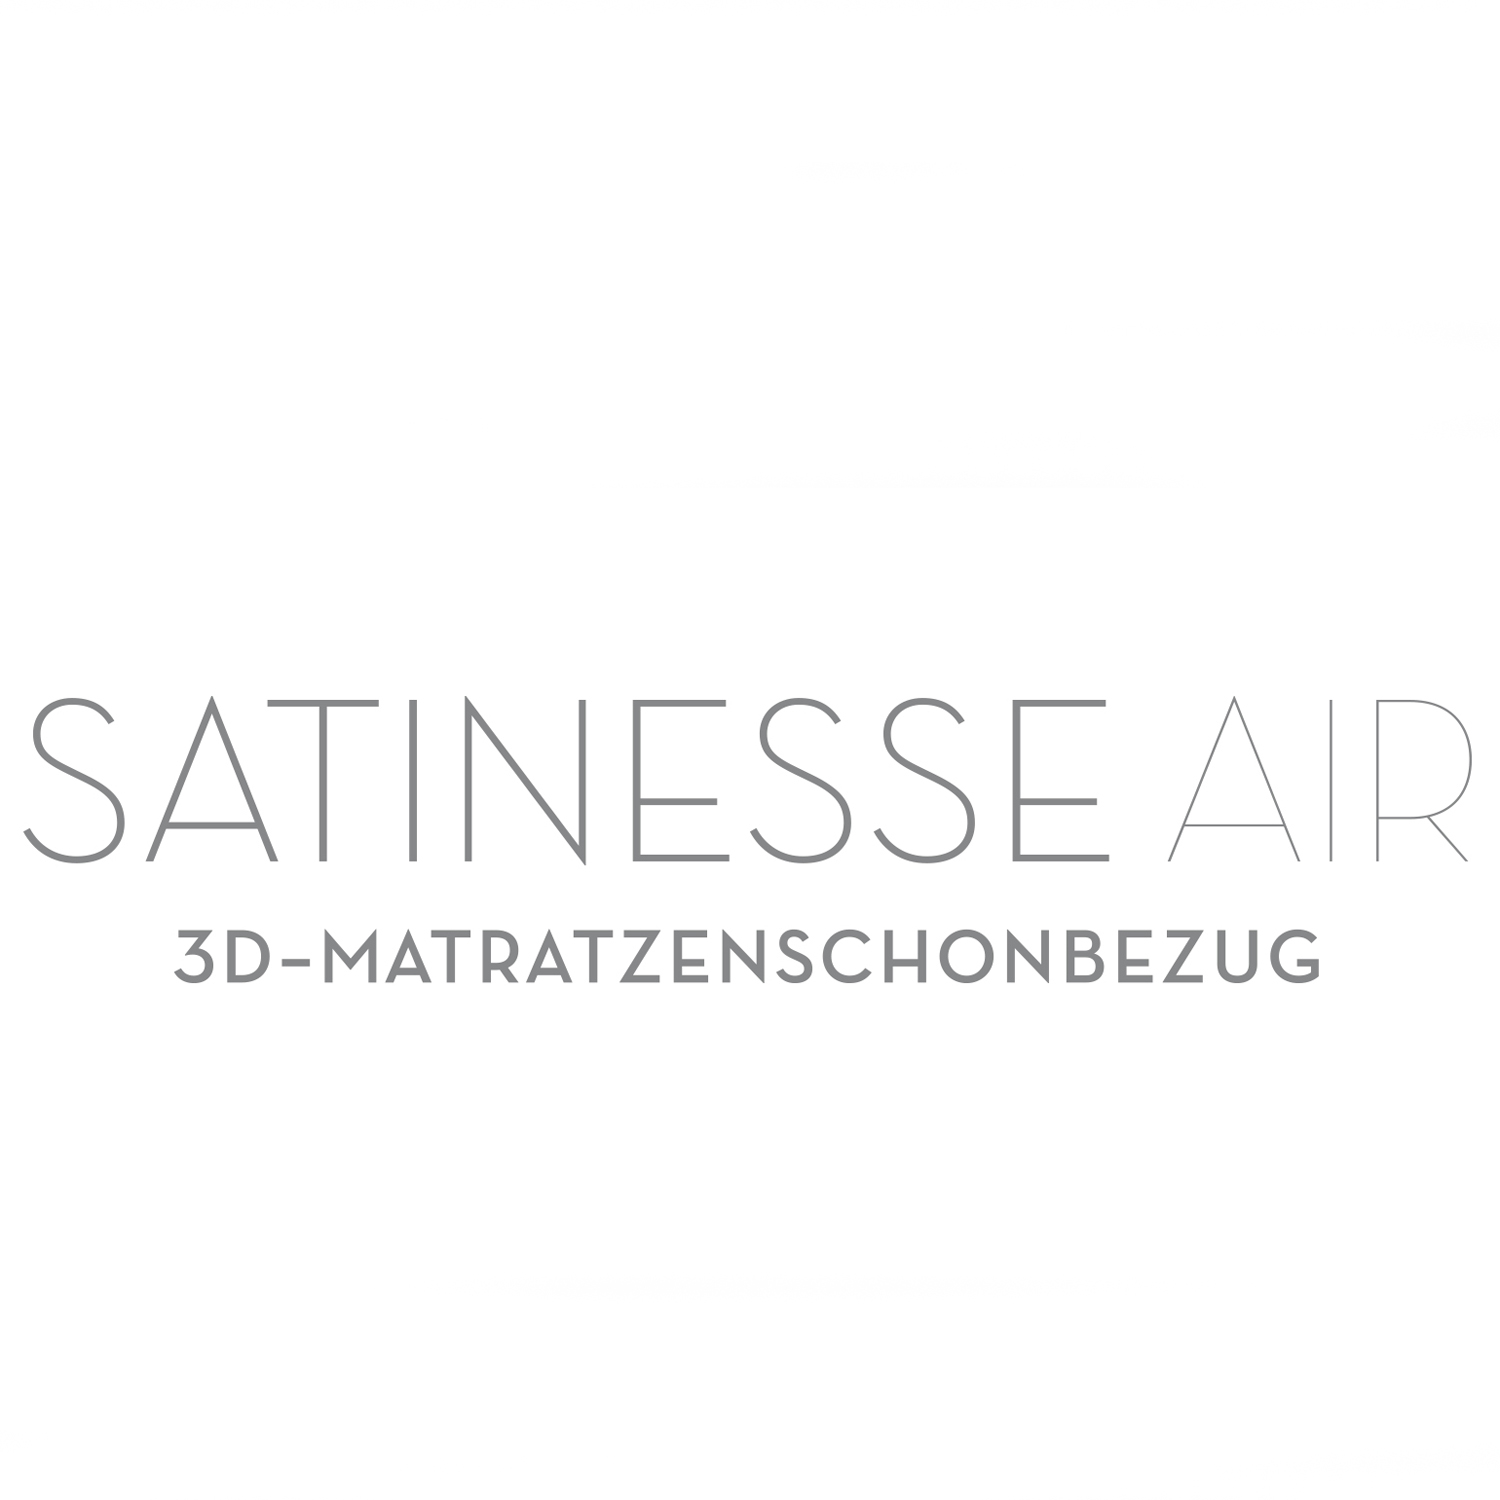 FORMESSE Matratzenschoner Satinesse Air Silver wollweiß 100x200cm